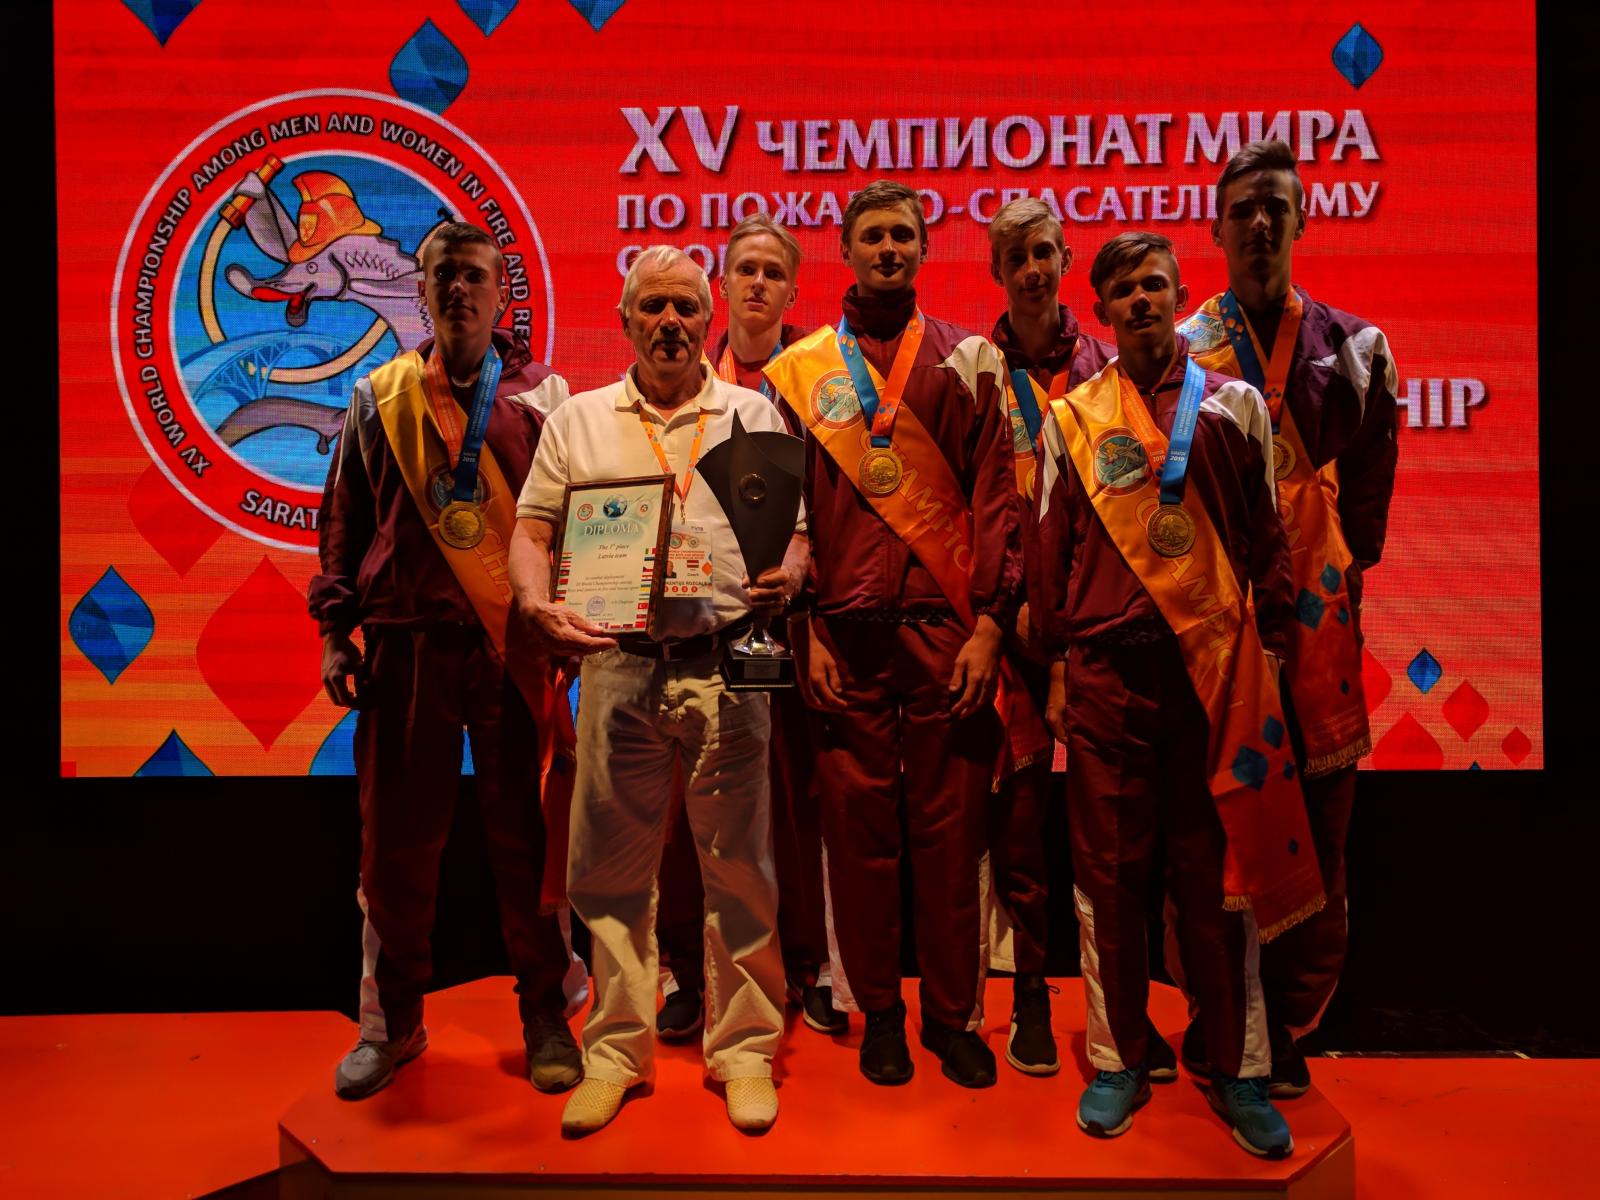 Krievijā aizvadīts pasaules čempionāts ugunsdzēsības sportā